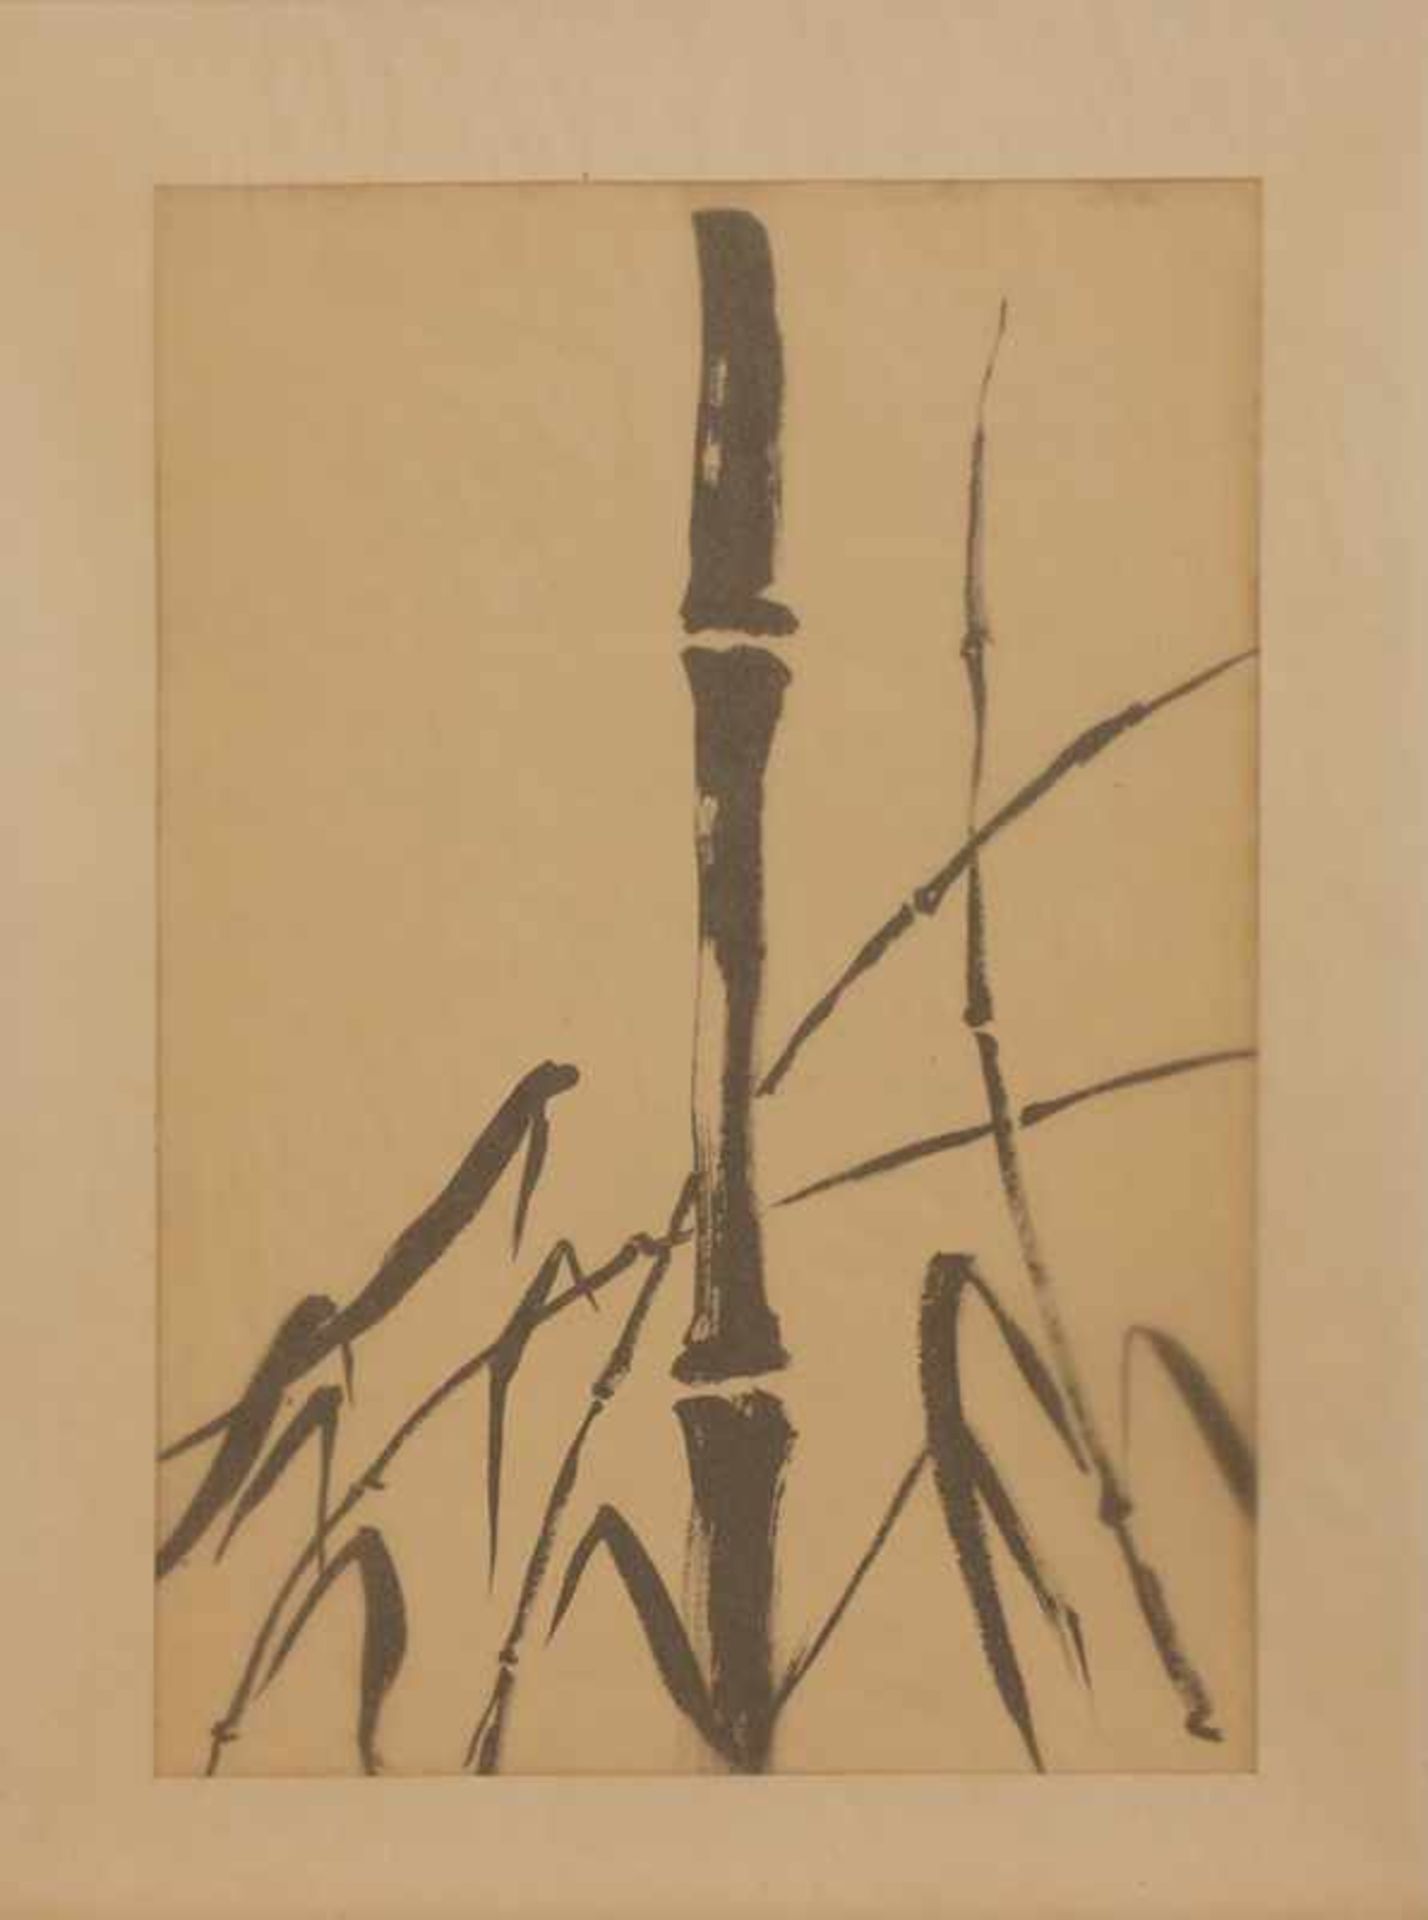 Unbekannt (chinesischer Künstler, Mitte 20. Jh.) Bambus Pinselzeichnung, 41 x 28,5 cm, ungerahmt,